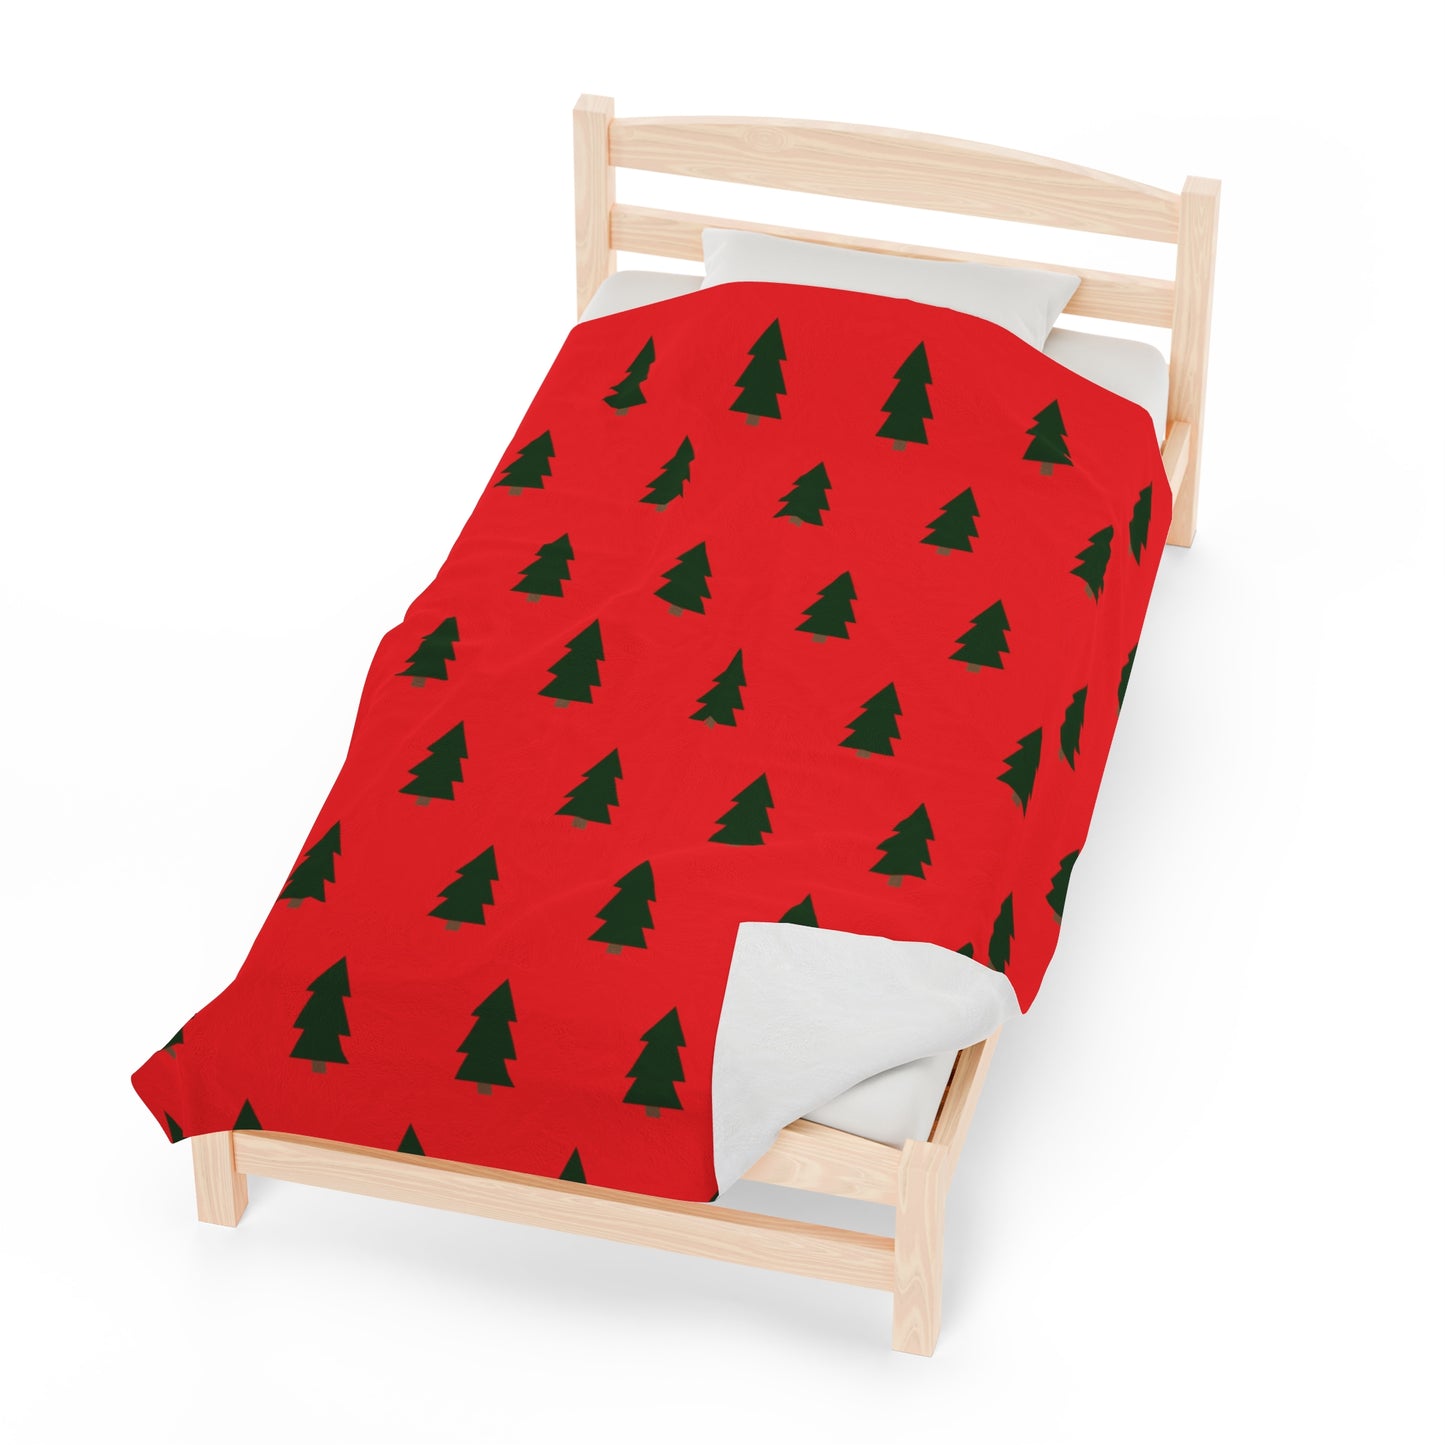 Holiday Red Blanket: 3 sizes; Polyester blend; Velveteen